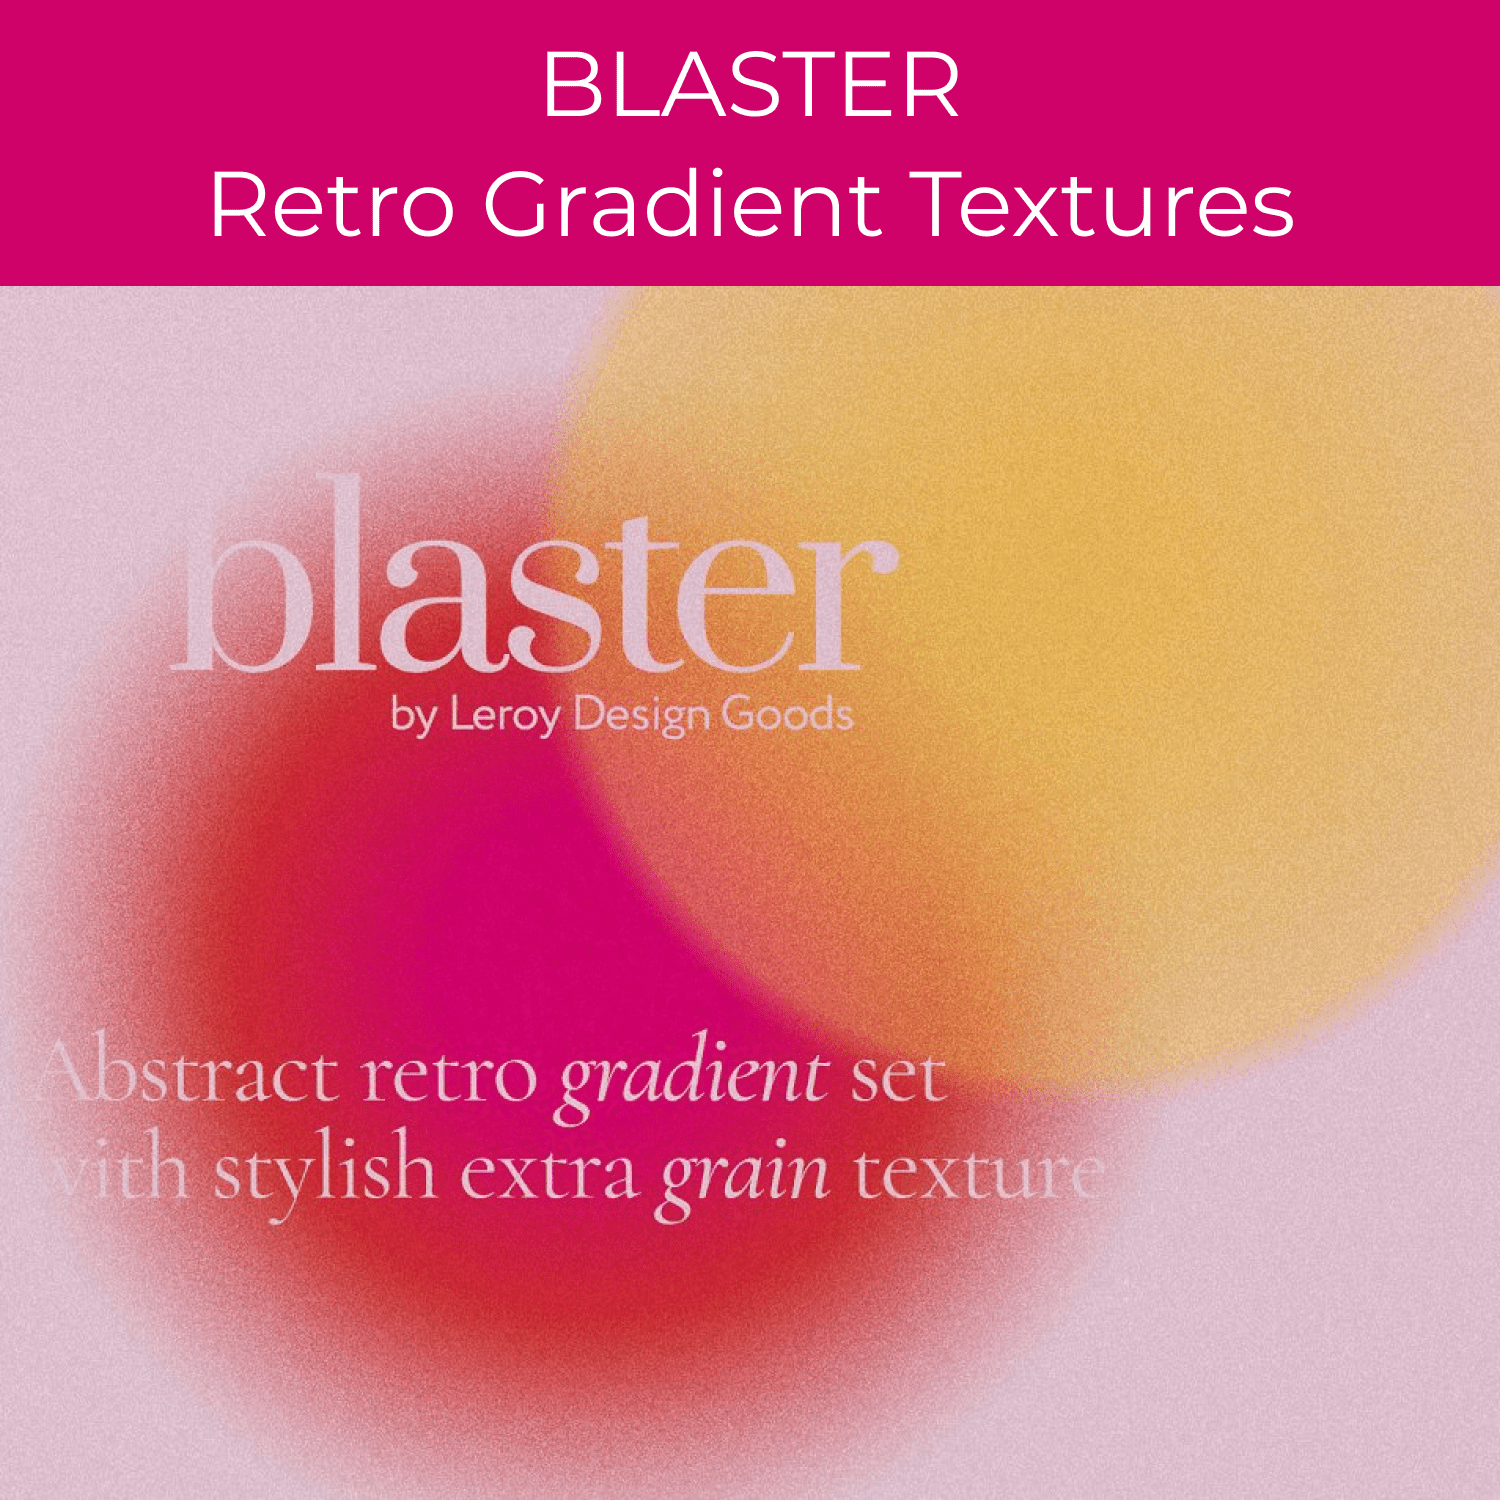 BLASTER Retro Gradient Textures cover.